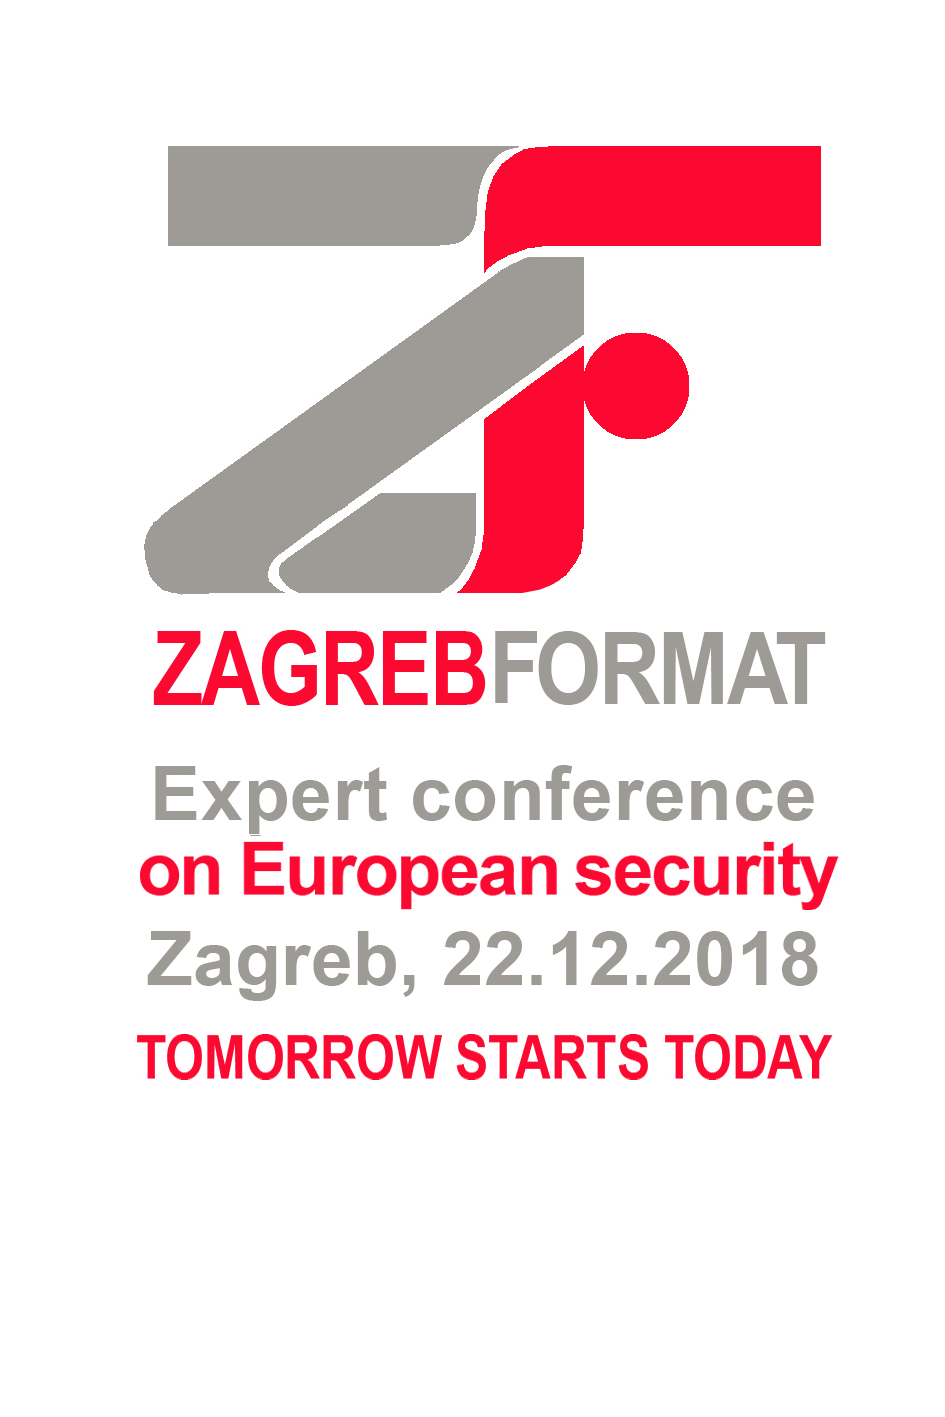 ZAGREB FORMAT – “Jutri se začne danes”